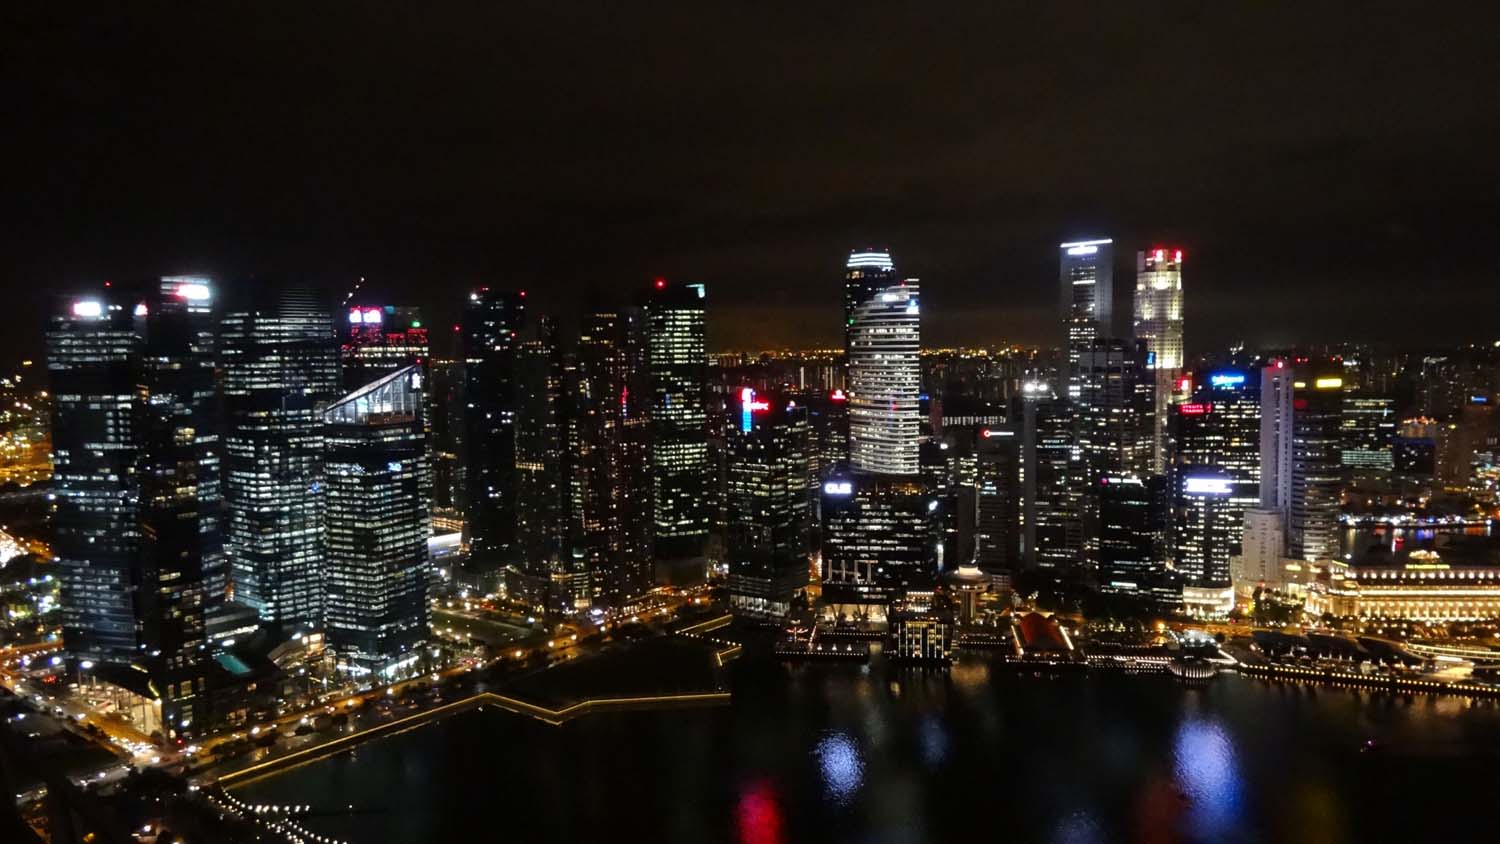 Singapore night sky